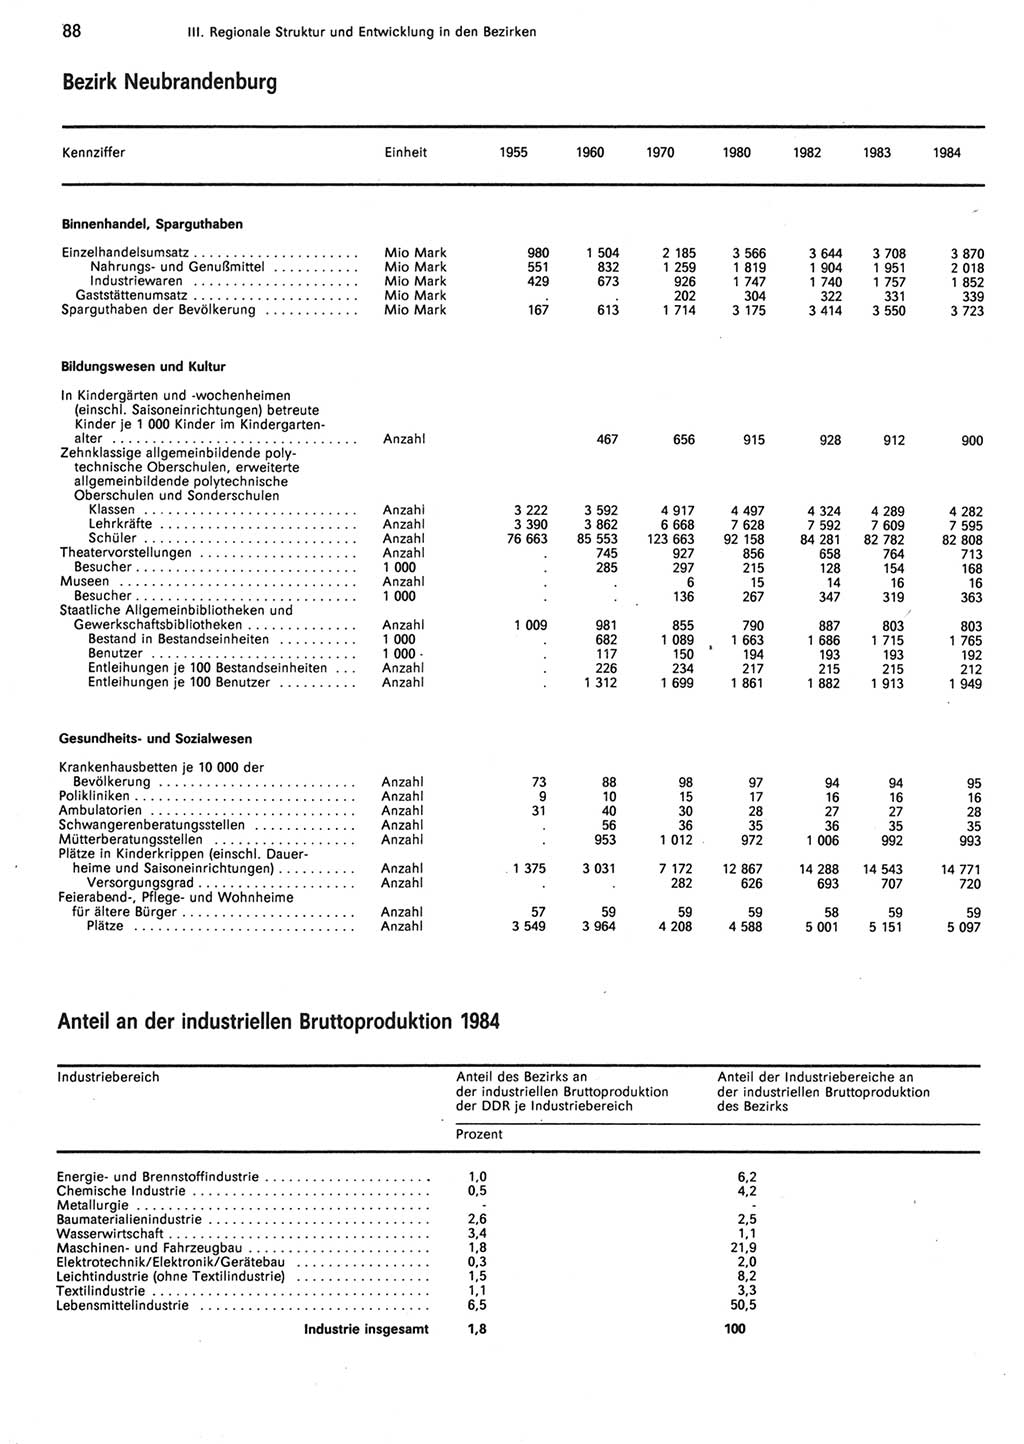 Statistisches Jahrbuch der Deutschen Demokratischen Republik (DDR) 1985, Seite 88 (Stat. Jb. DDR 1985, S. 88)